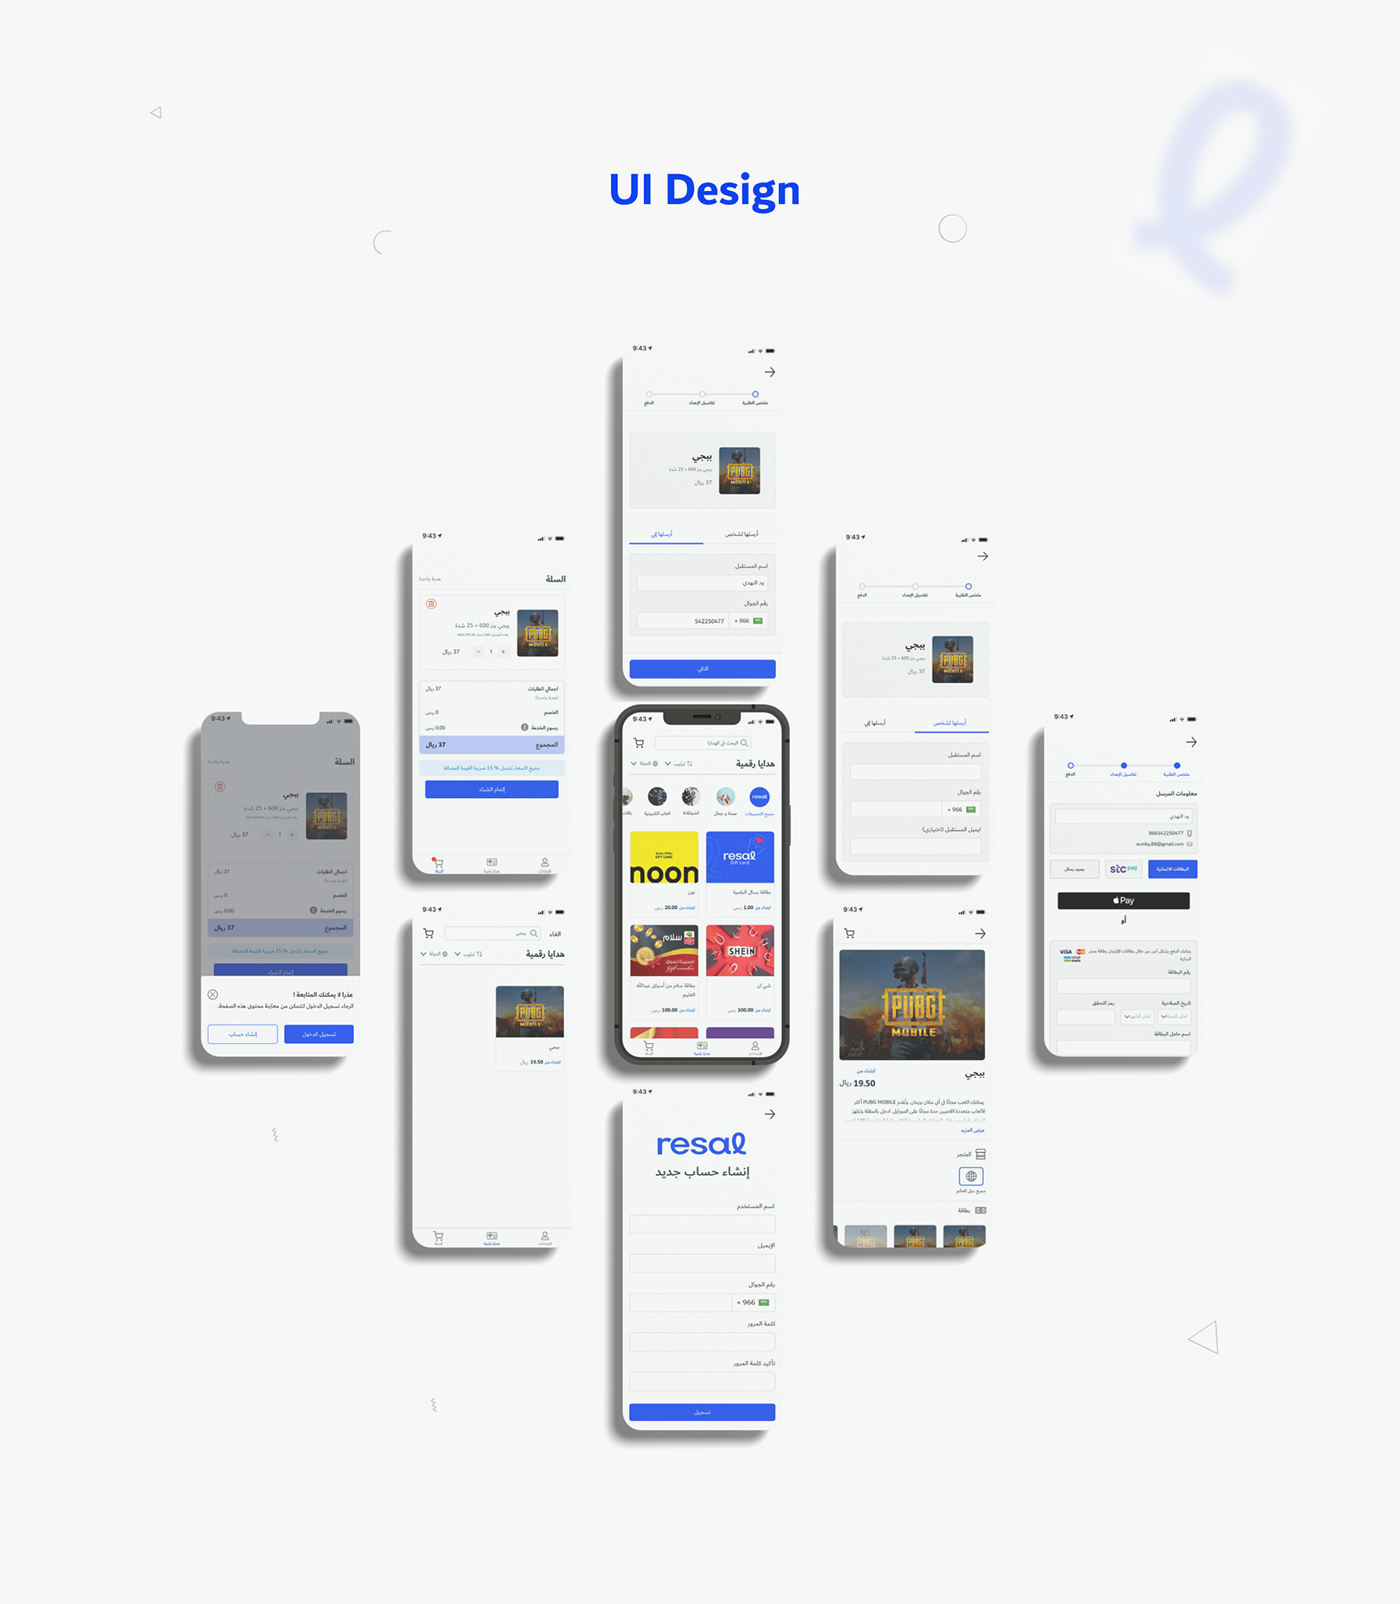 app design Case Study Figma Mobile app redesign ui design UI/UX uidesign user experience UX design